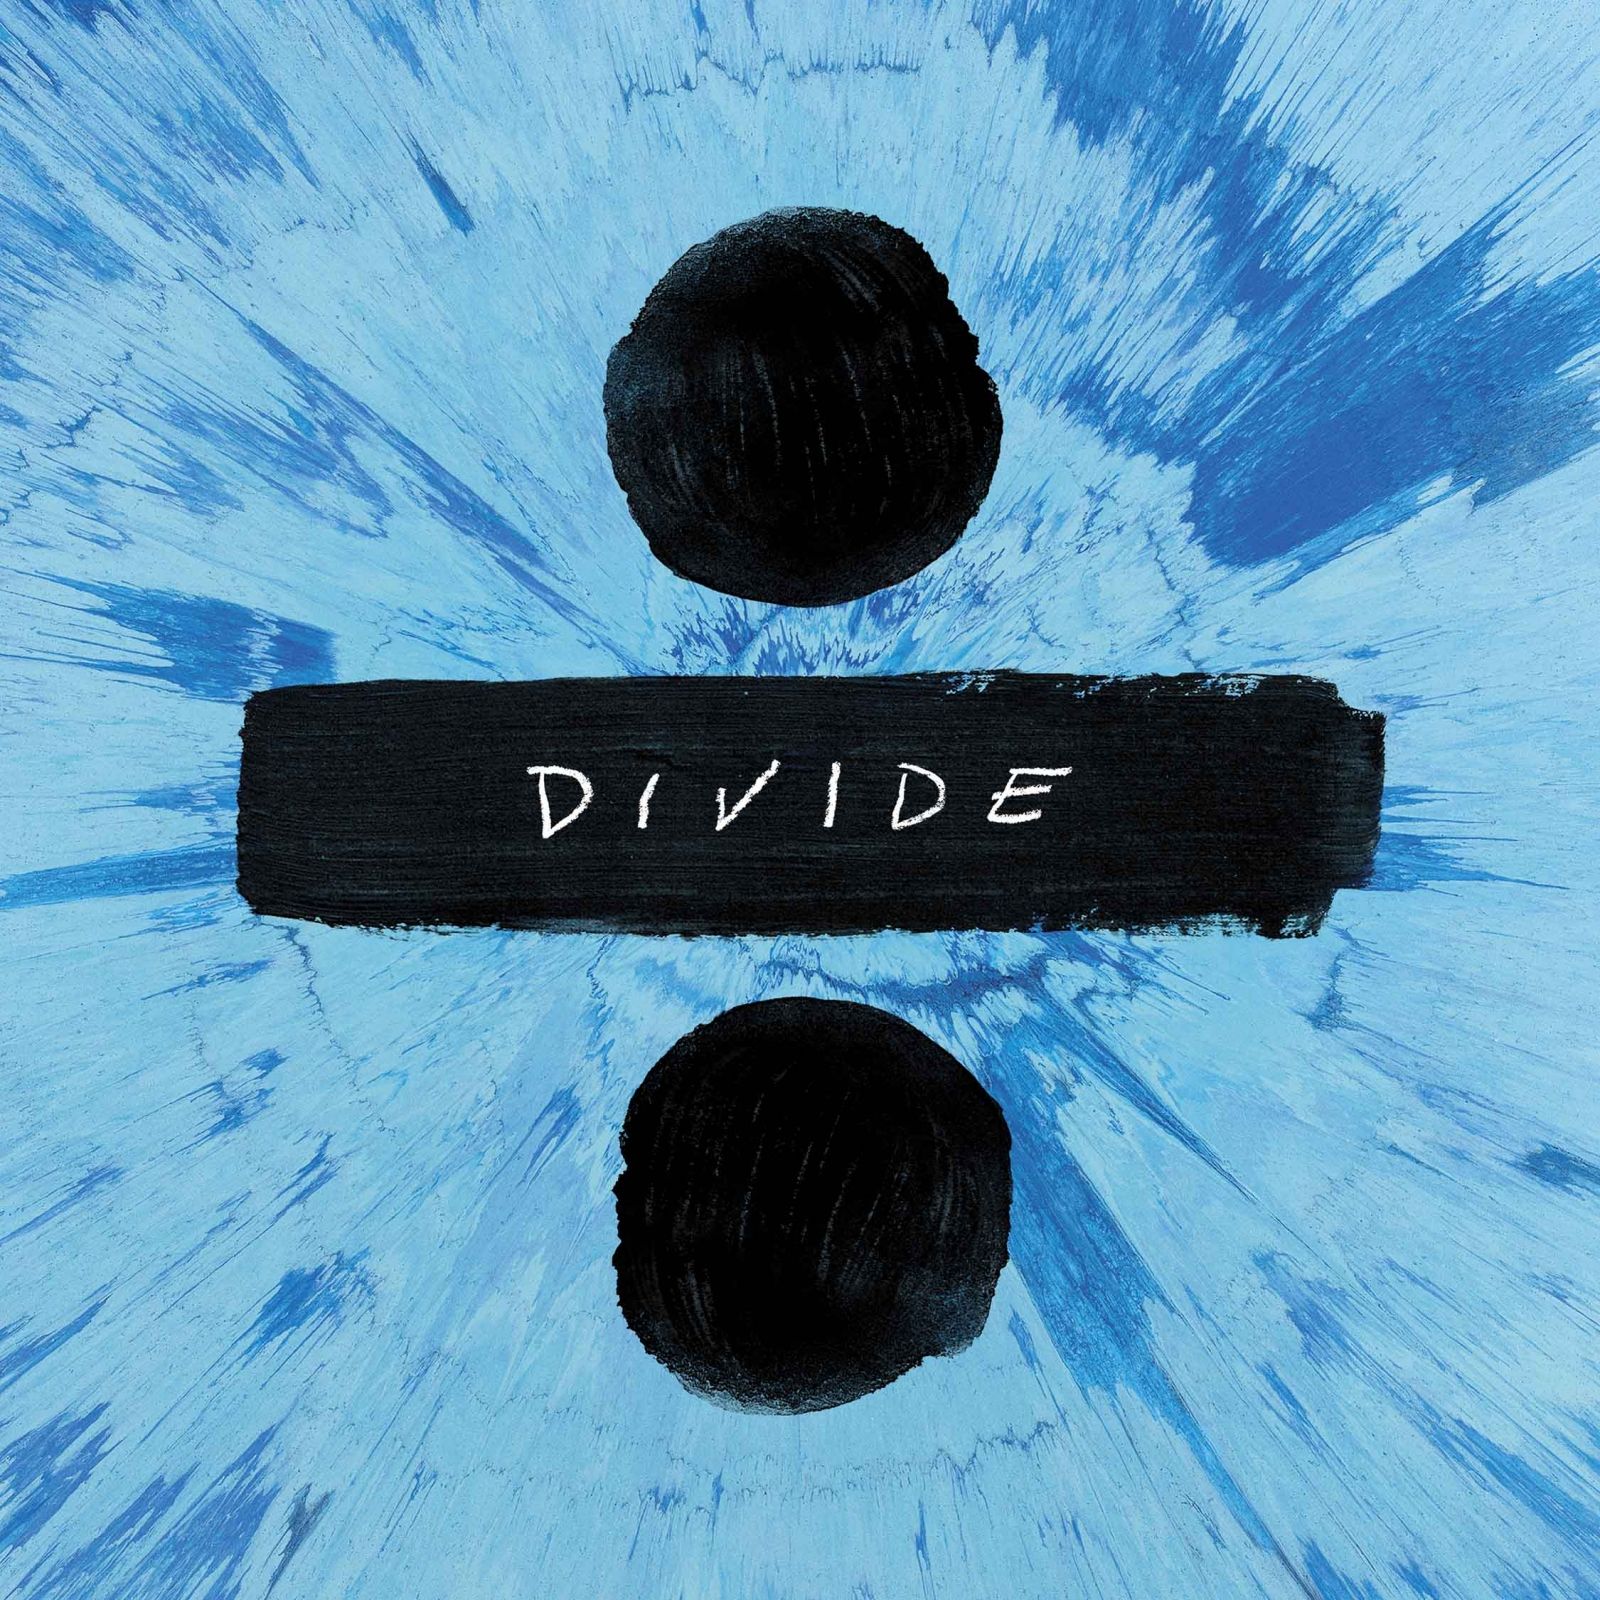 Ed Sheeran ÷ album review: Divide is .ibtimes.co.uk